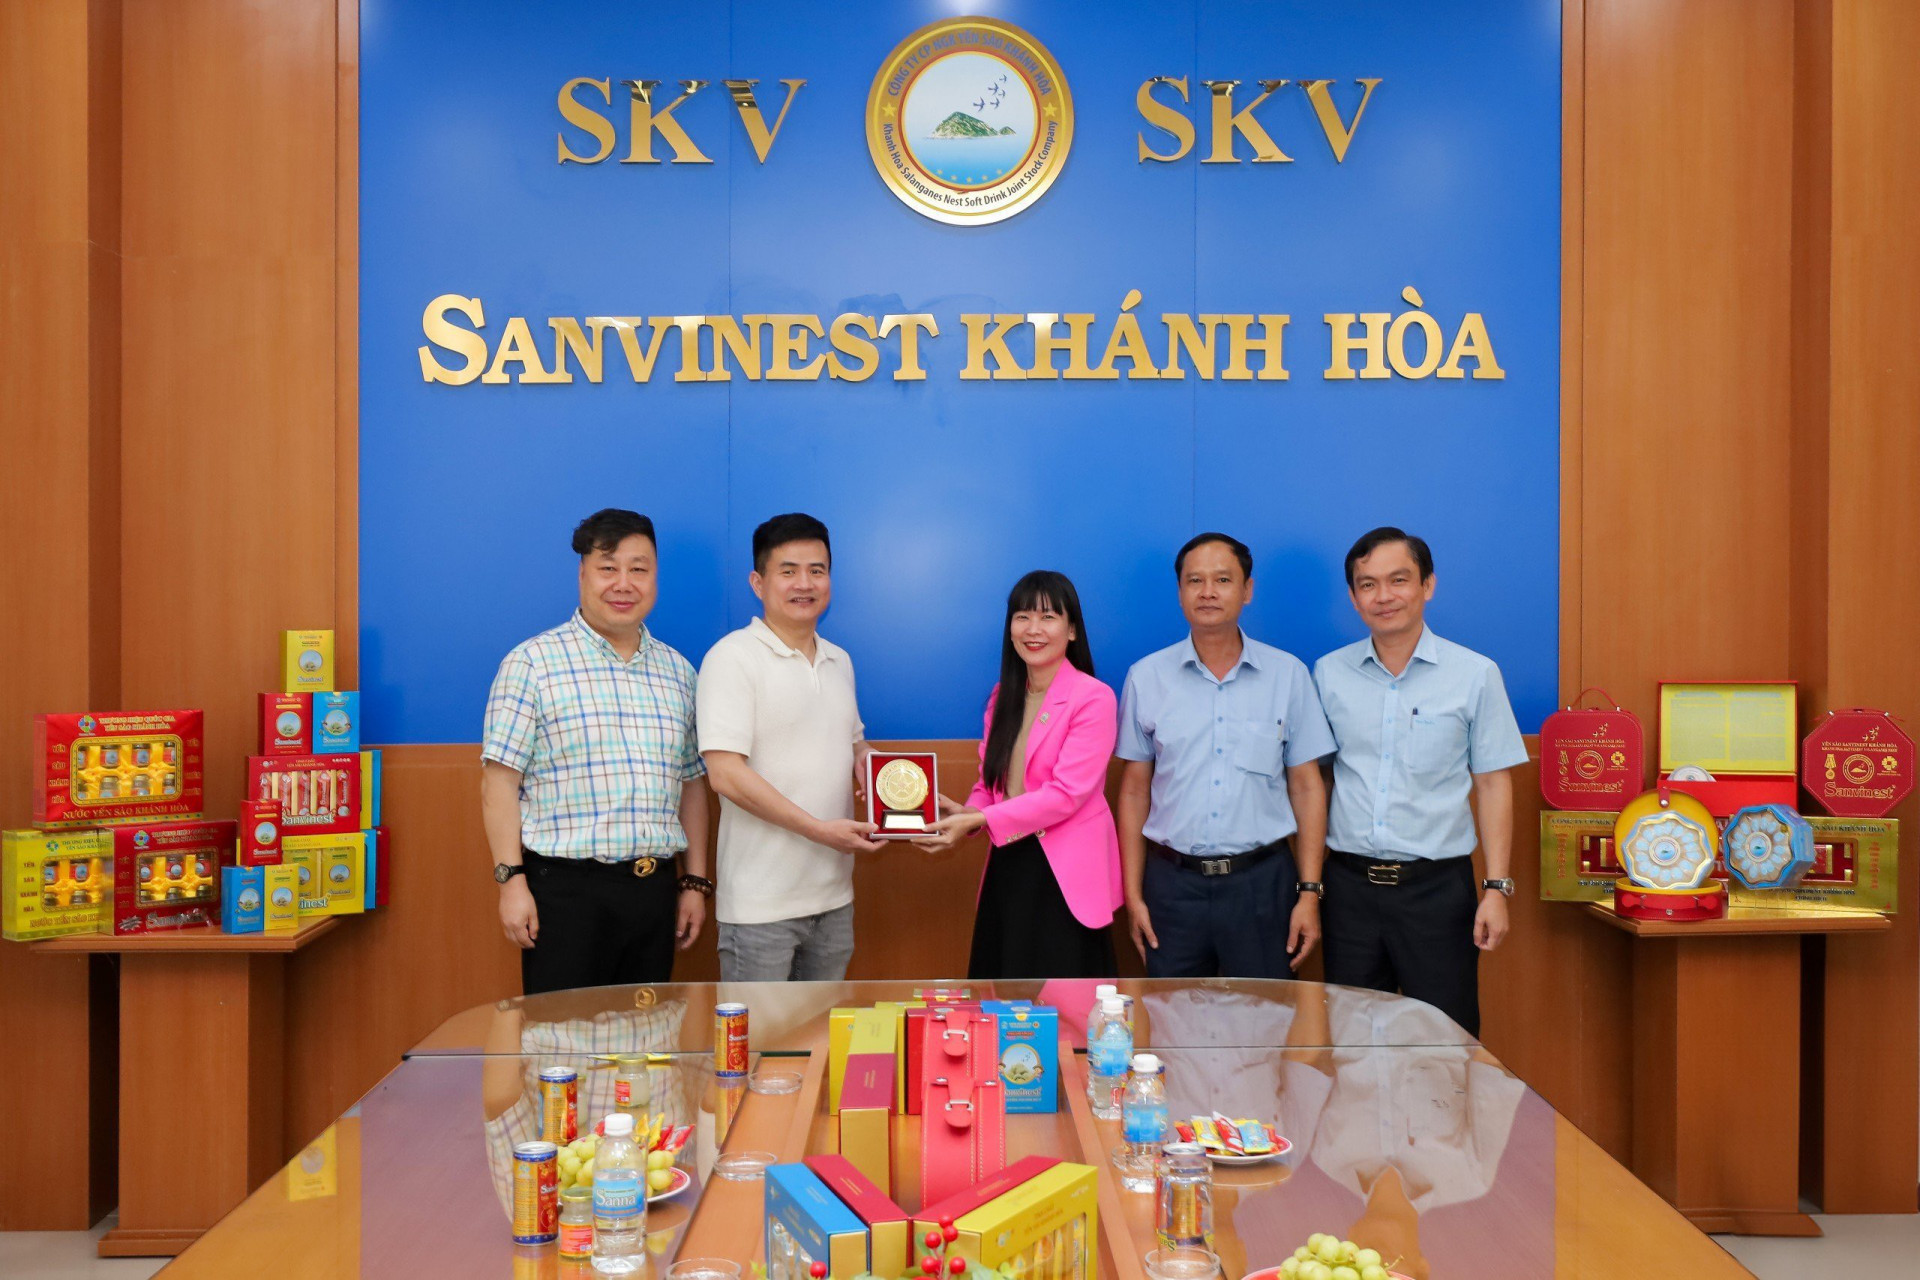 Lãnh đạo Sanvinest Khánh Hòa tặng quà lưu niệm cho đại diện Tập đoàn Đồng Nhân Đường.